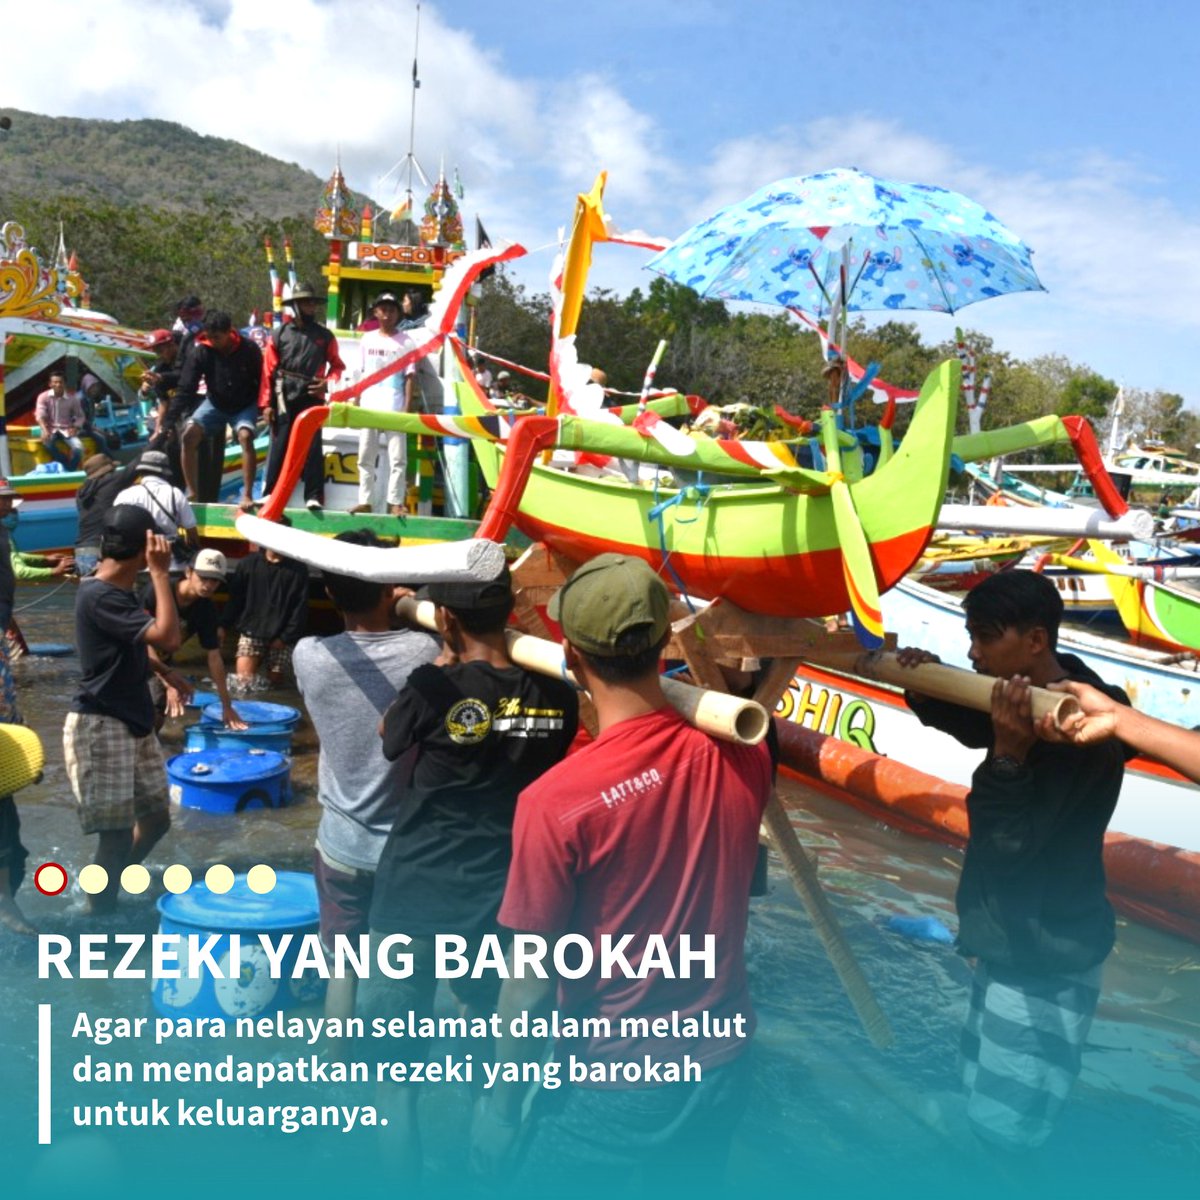 “Serta, agar para nelayan selamat dalam melalut dan mendapatkan rezeki yang barokah untuk keluarganya," imbuhnya ketika hadir di acara tersebut, Rabu, 02 September 2020.